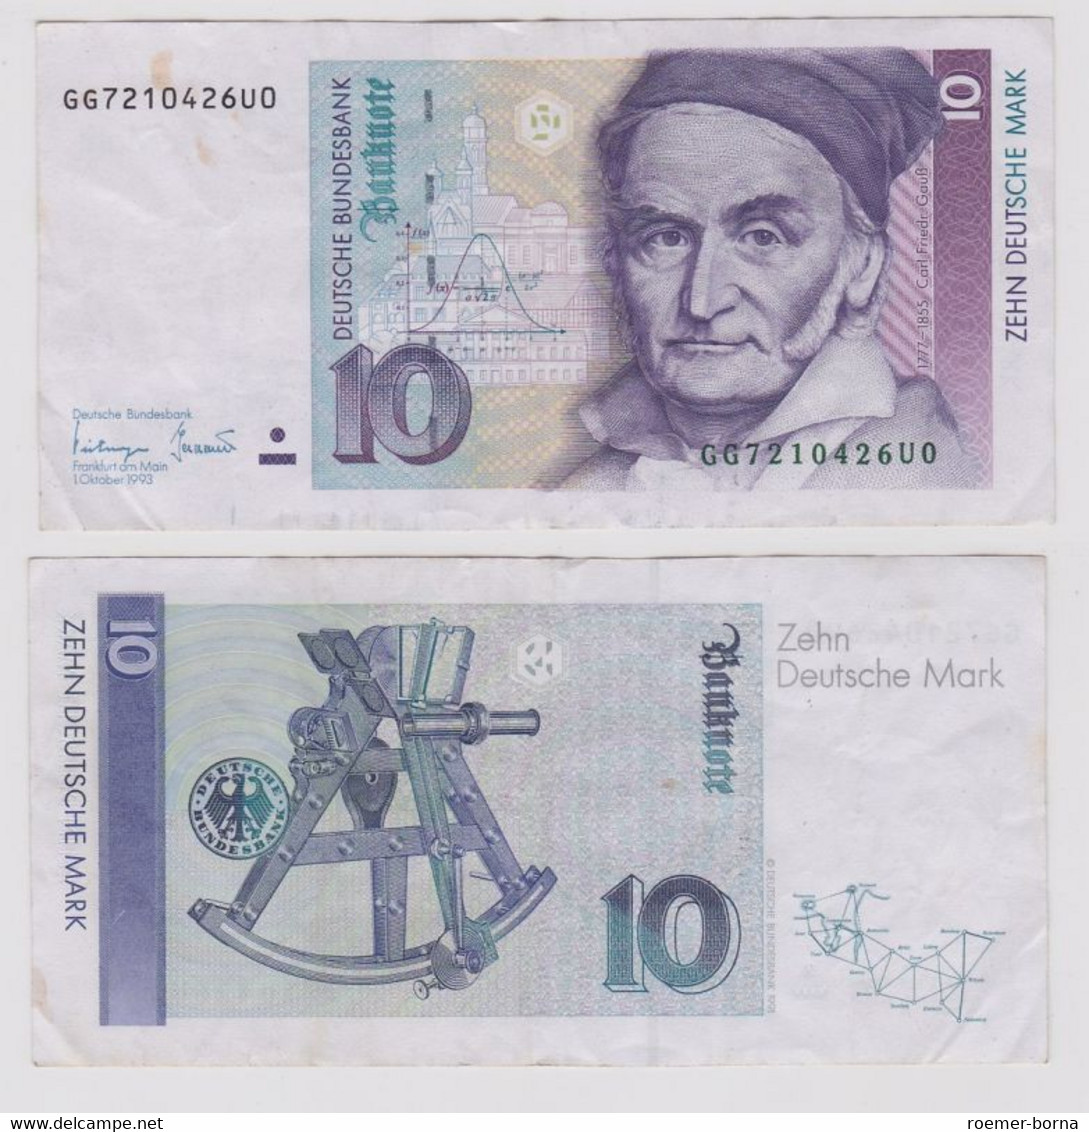 T146757 Banknote 10 DM Deutsche Mark Ro. 303a Schein 1.Okt. 1993 KN GG 7210426U0 - 10 Deutsche Mark